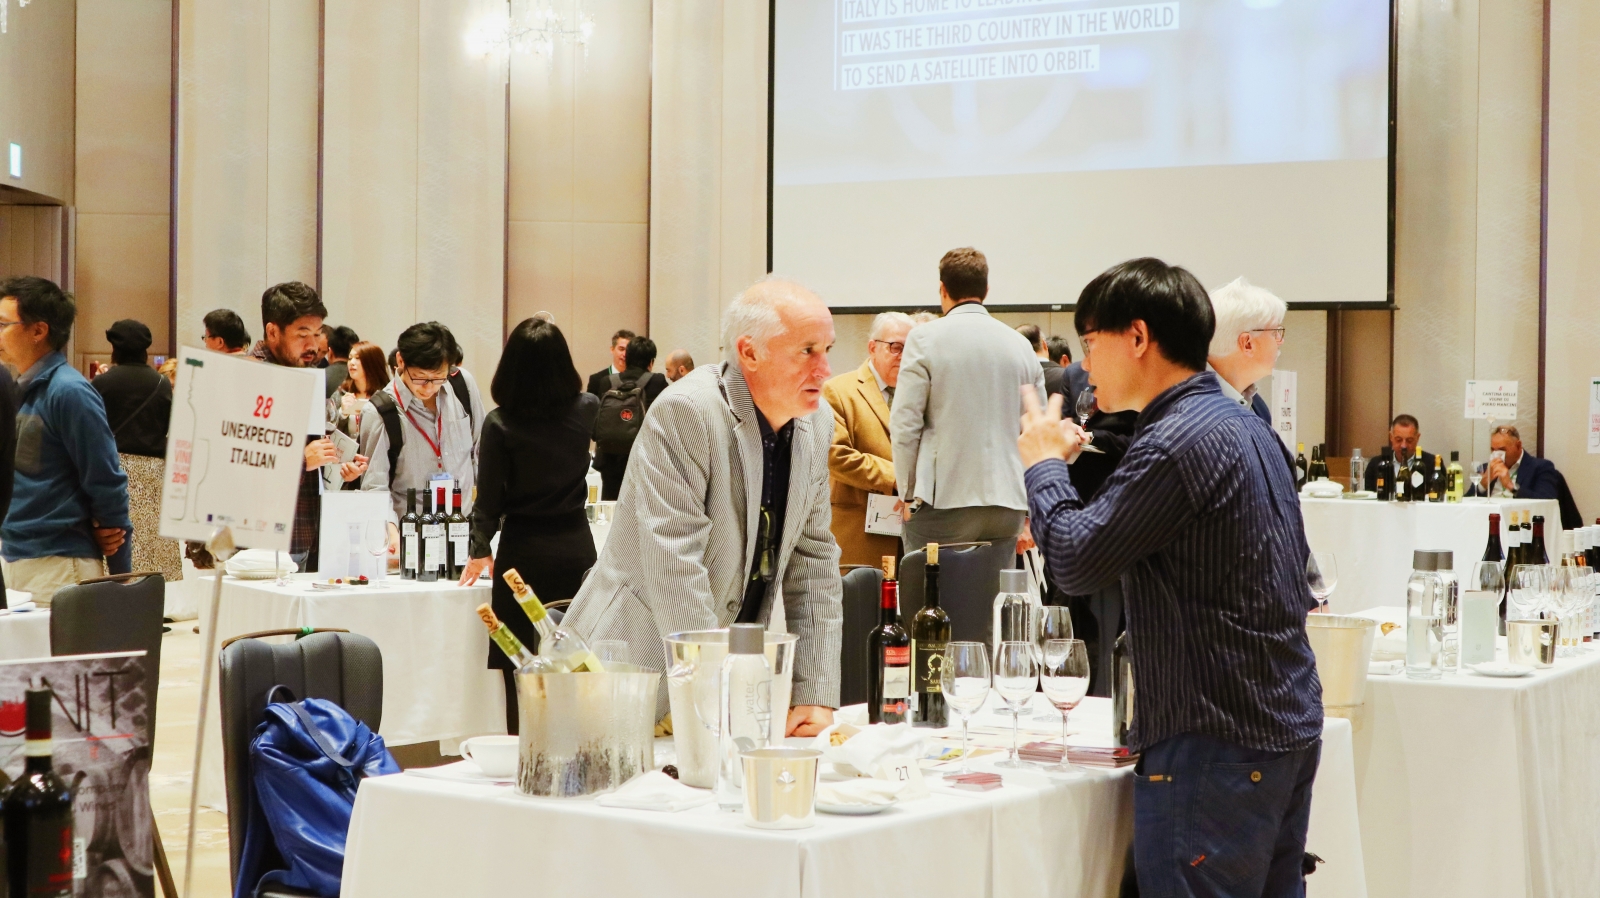 義大利葡萄酒為台灣葡萄酒愛好者帶來全新感受，讓大家在傳統的法國、西班牙、以及新世界葡萄酒之外有了更多選擇。圖為義大利葡萄酒展(Borsa Vini Italiani)台北場一景。